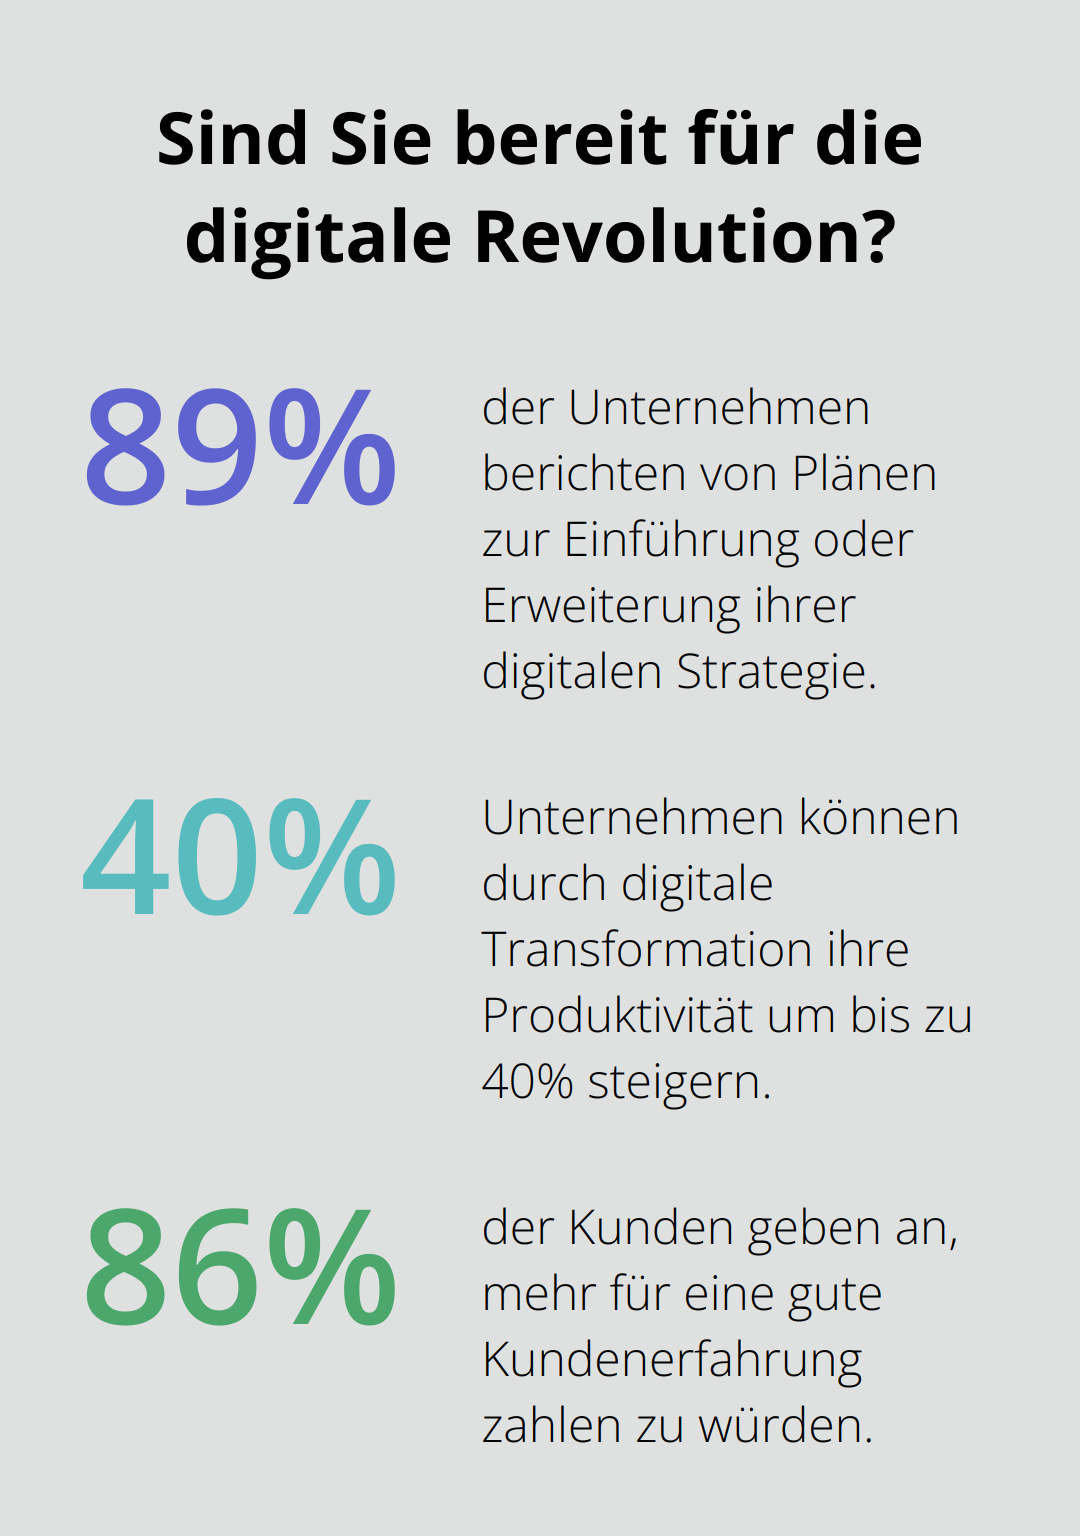 Fact - Sind Sie bereit für die digitale Revolution?